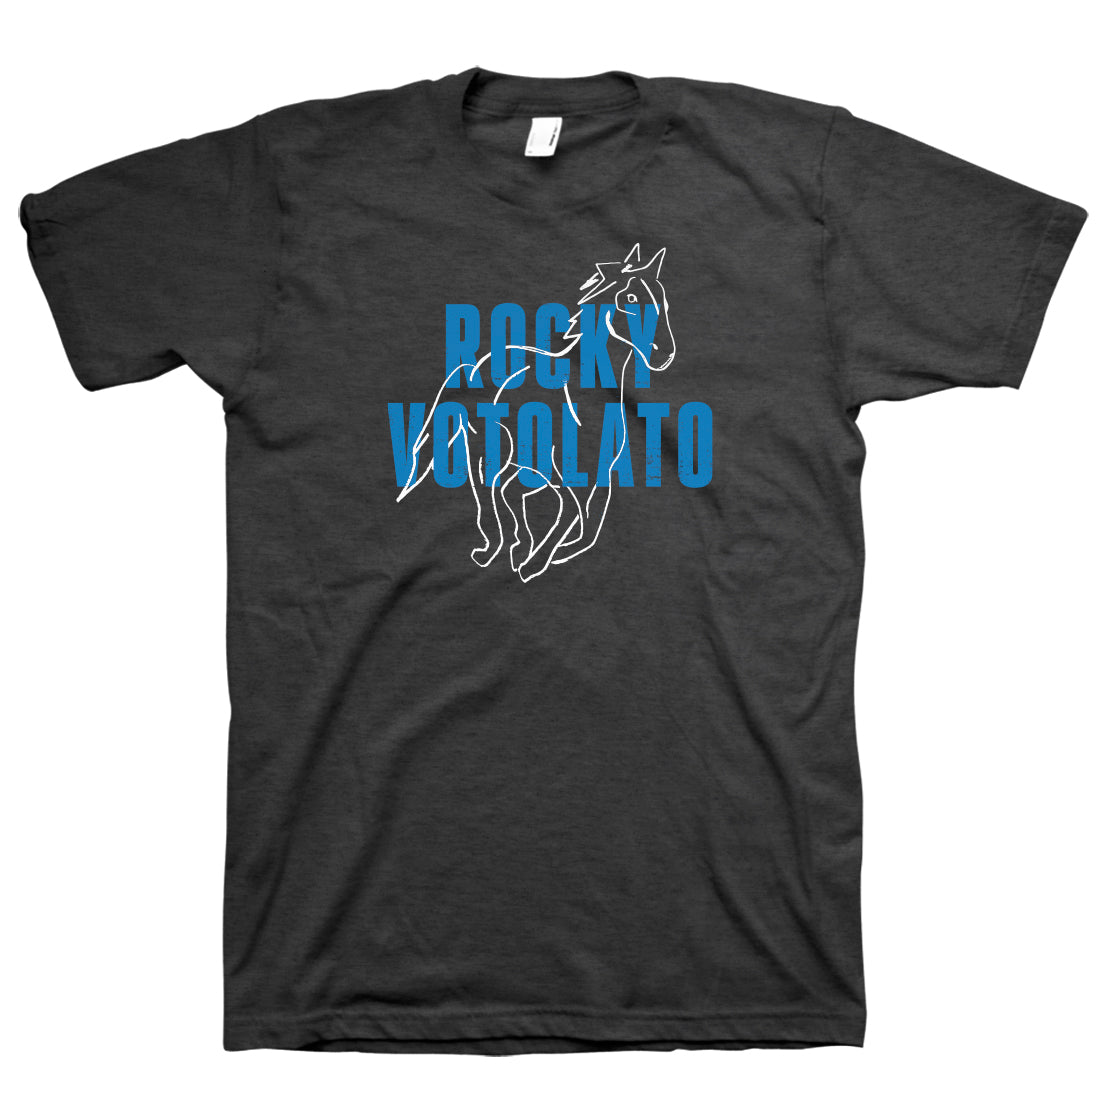 Rocky Votolato - Wild Roots T-Shirt